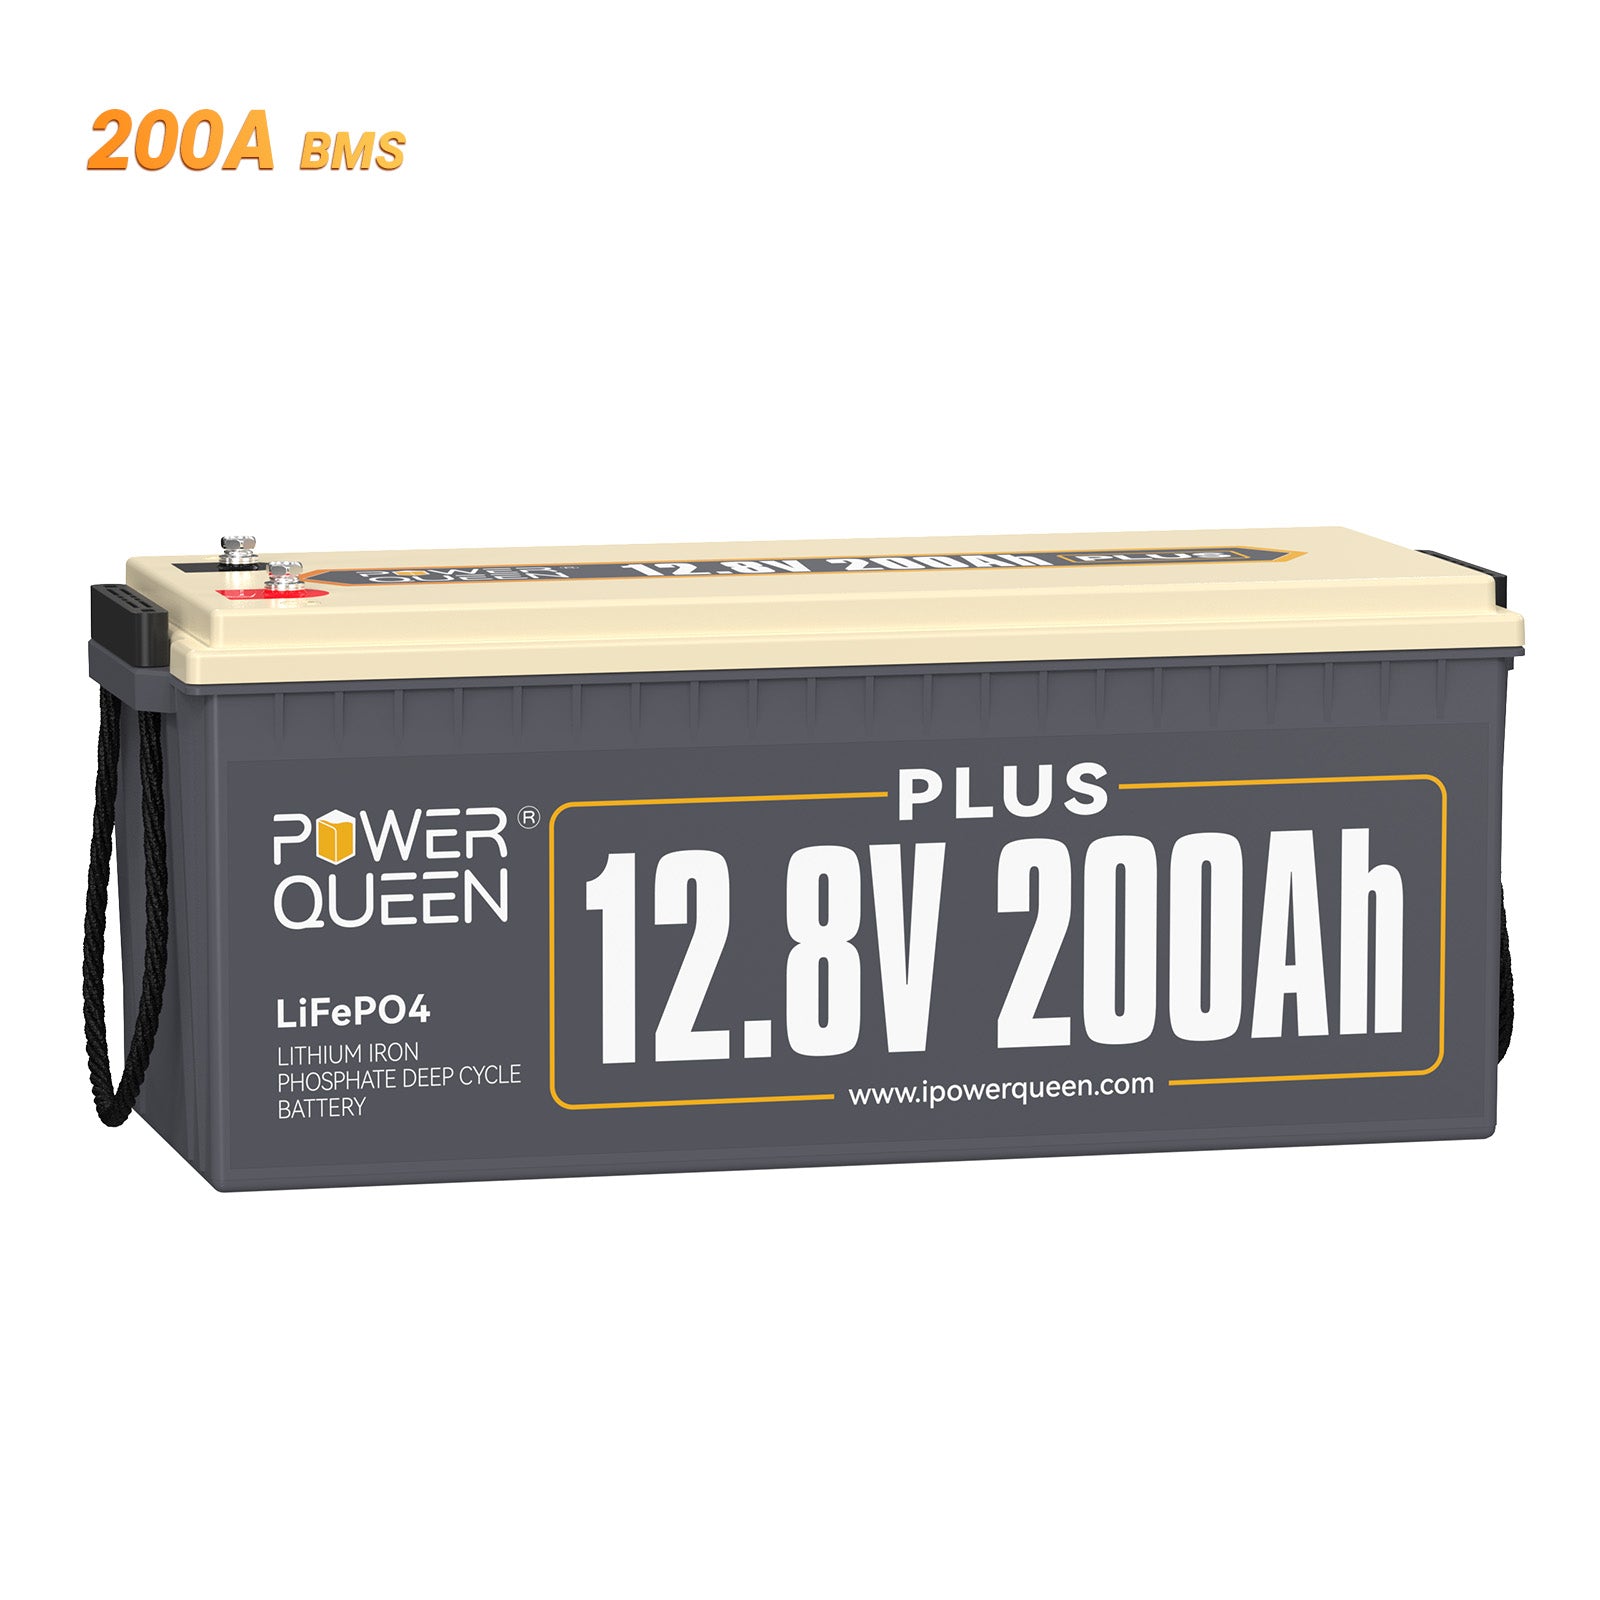 【0% BTW】Power Queen 12V 200Ah Plus LiFePO4-batterij, ingebouwd 200A BMS